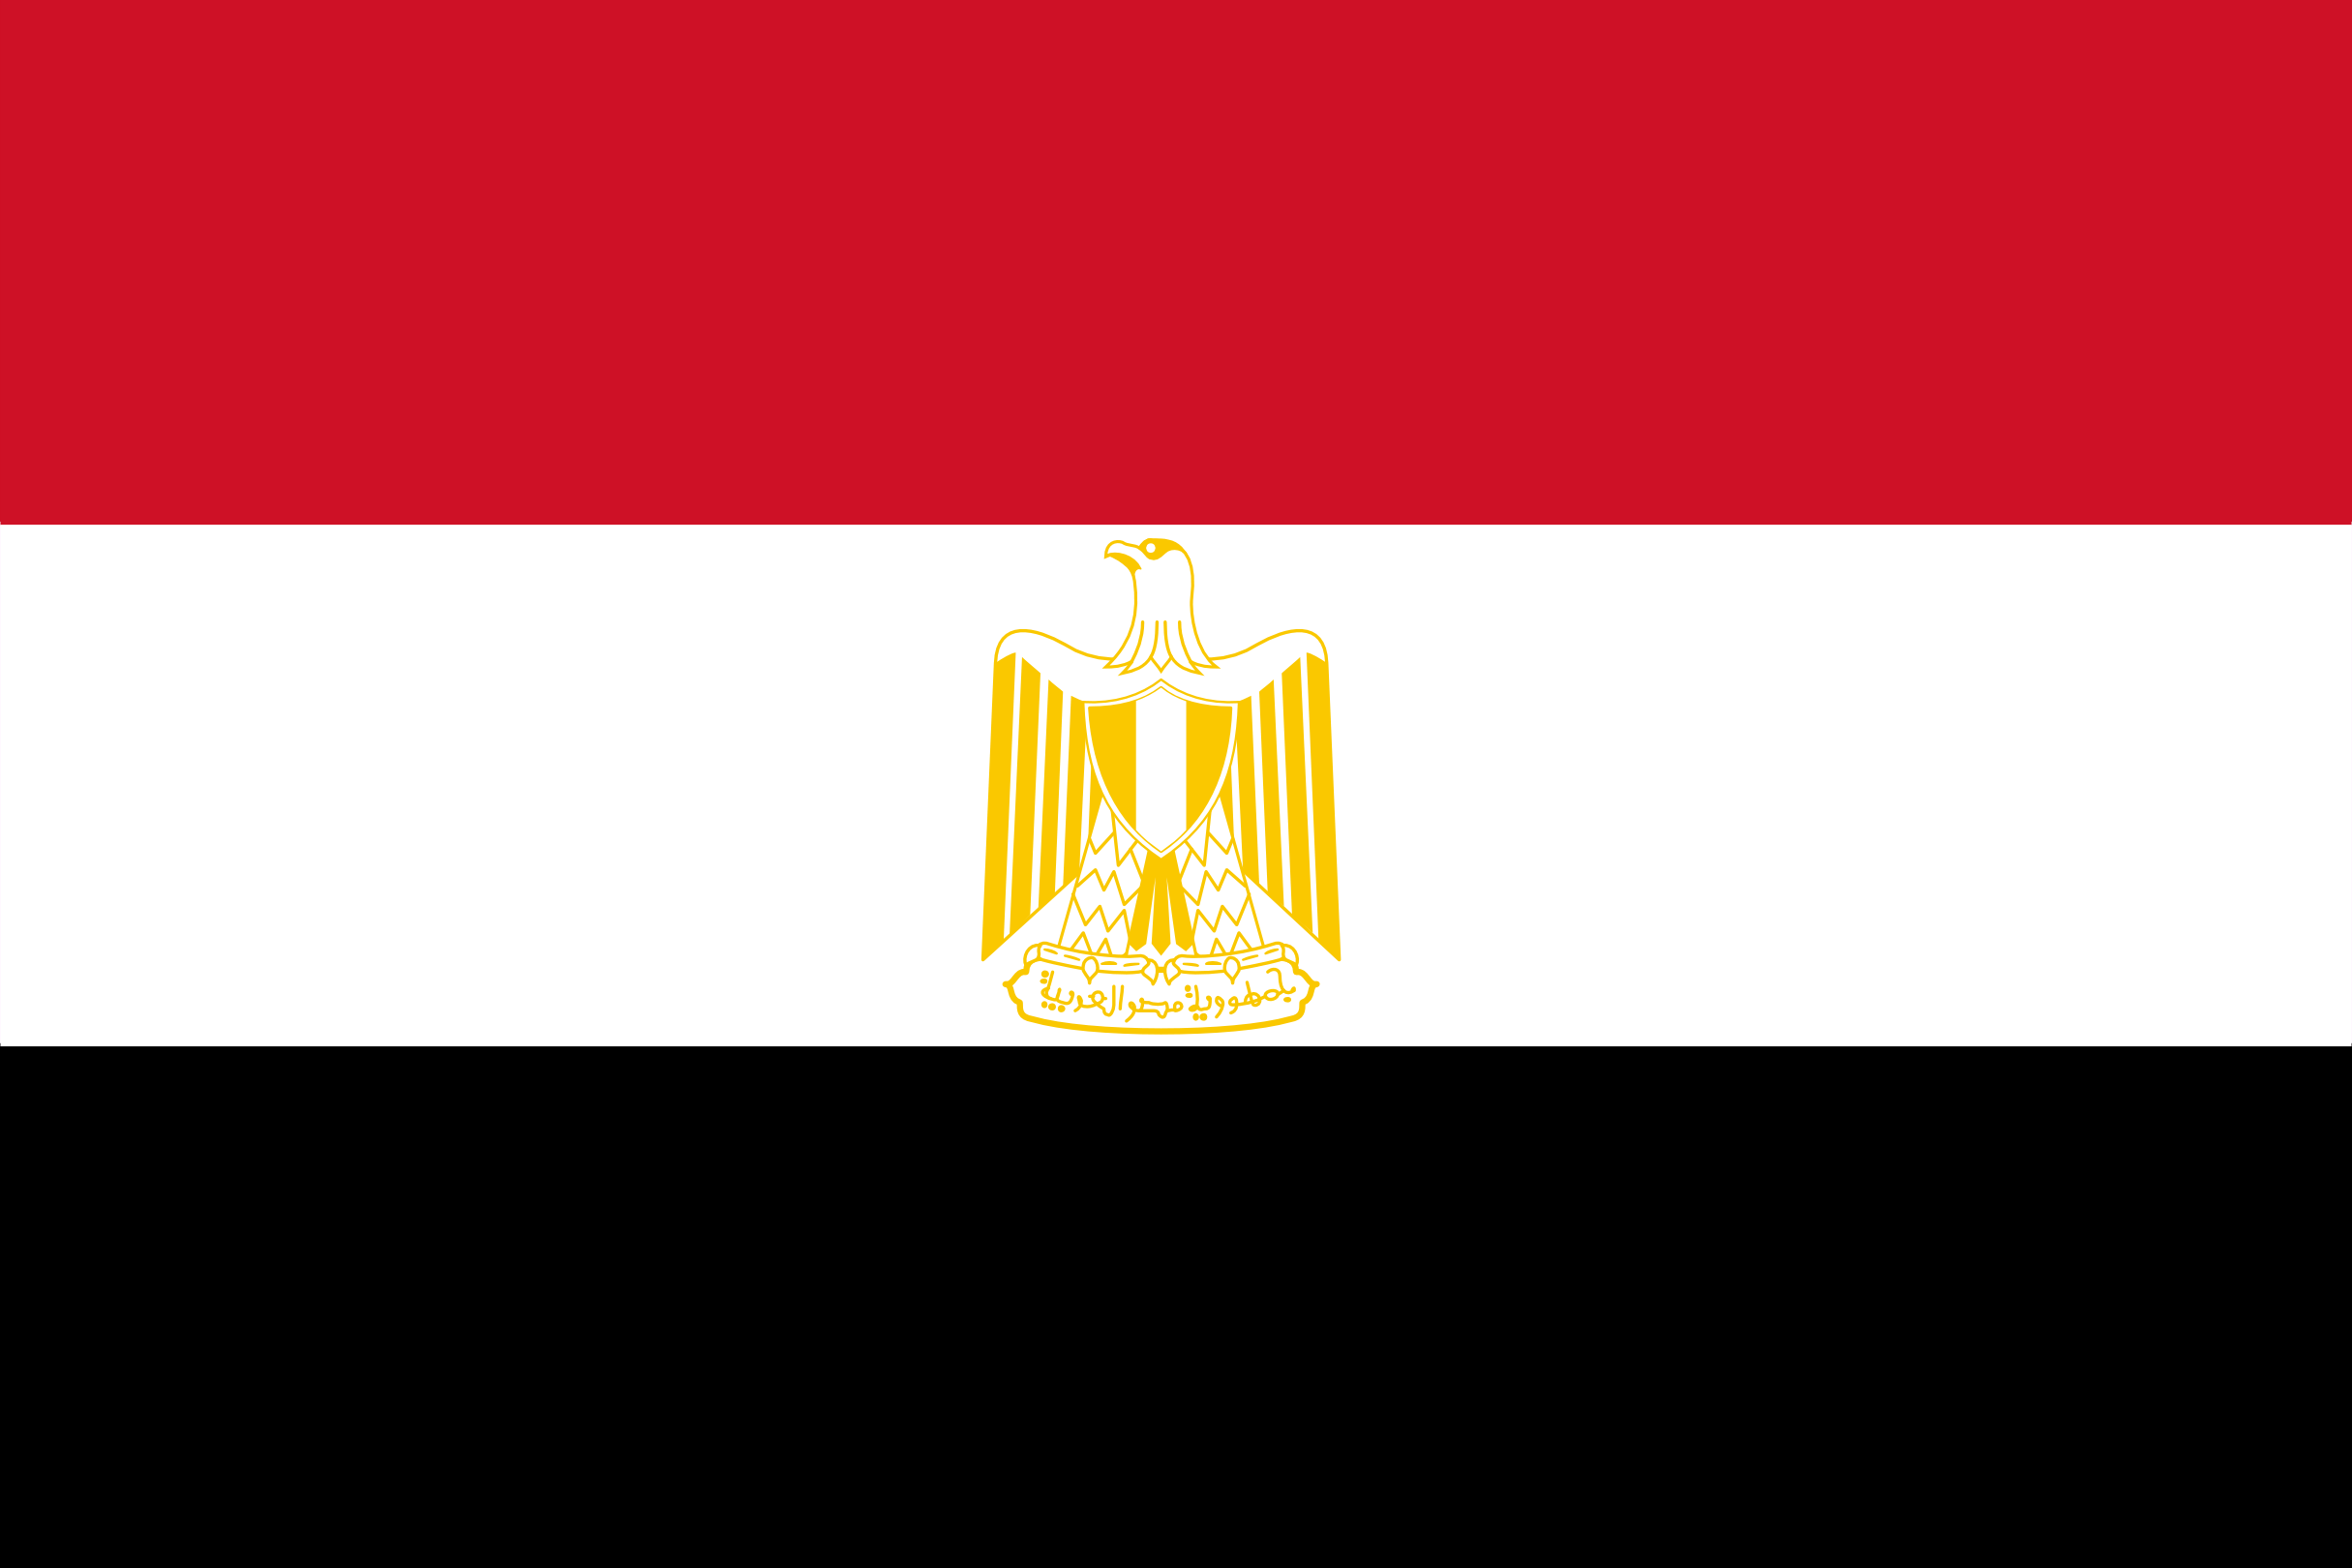 la imagen muestra la bandera de egipto